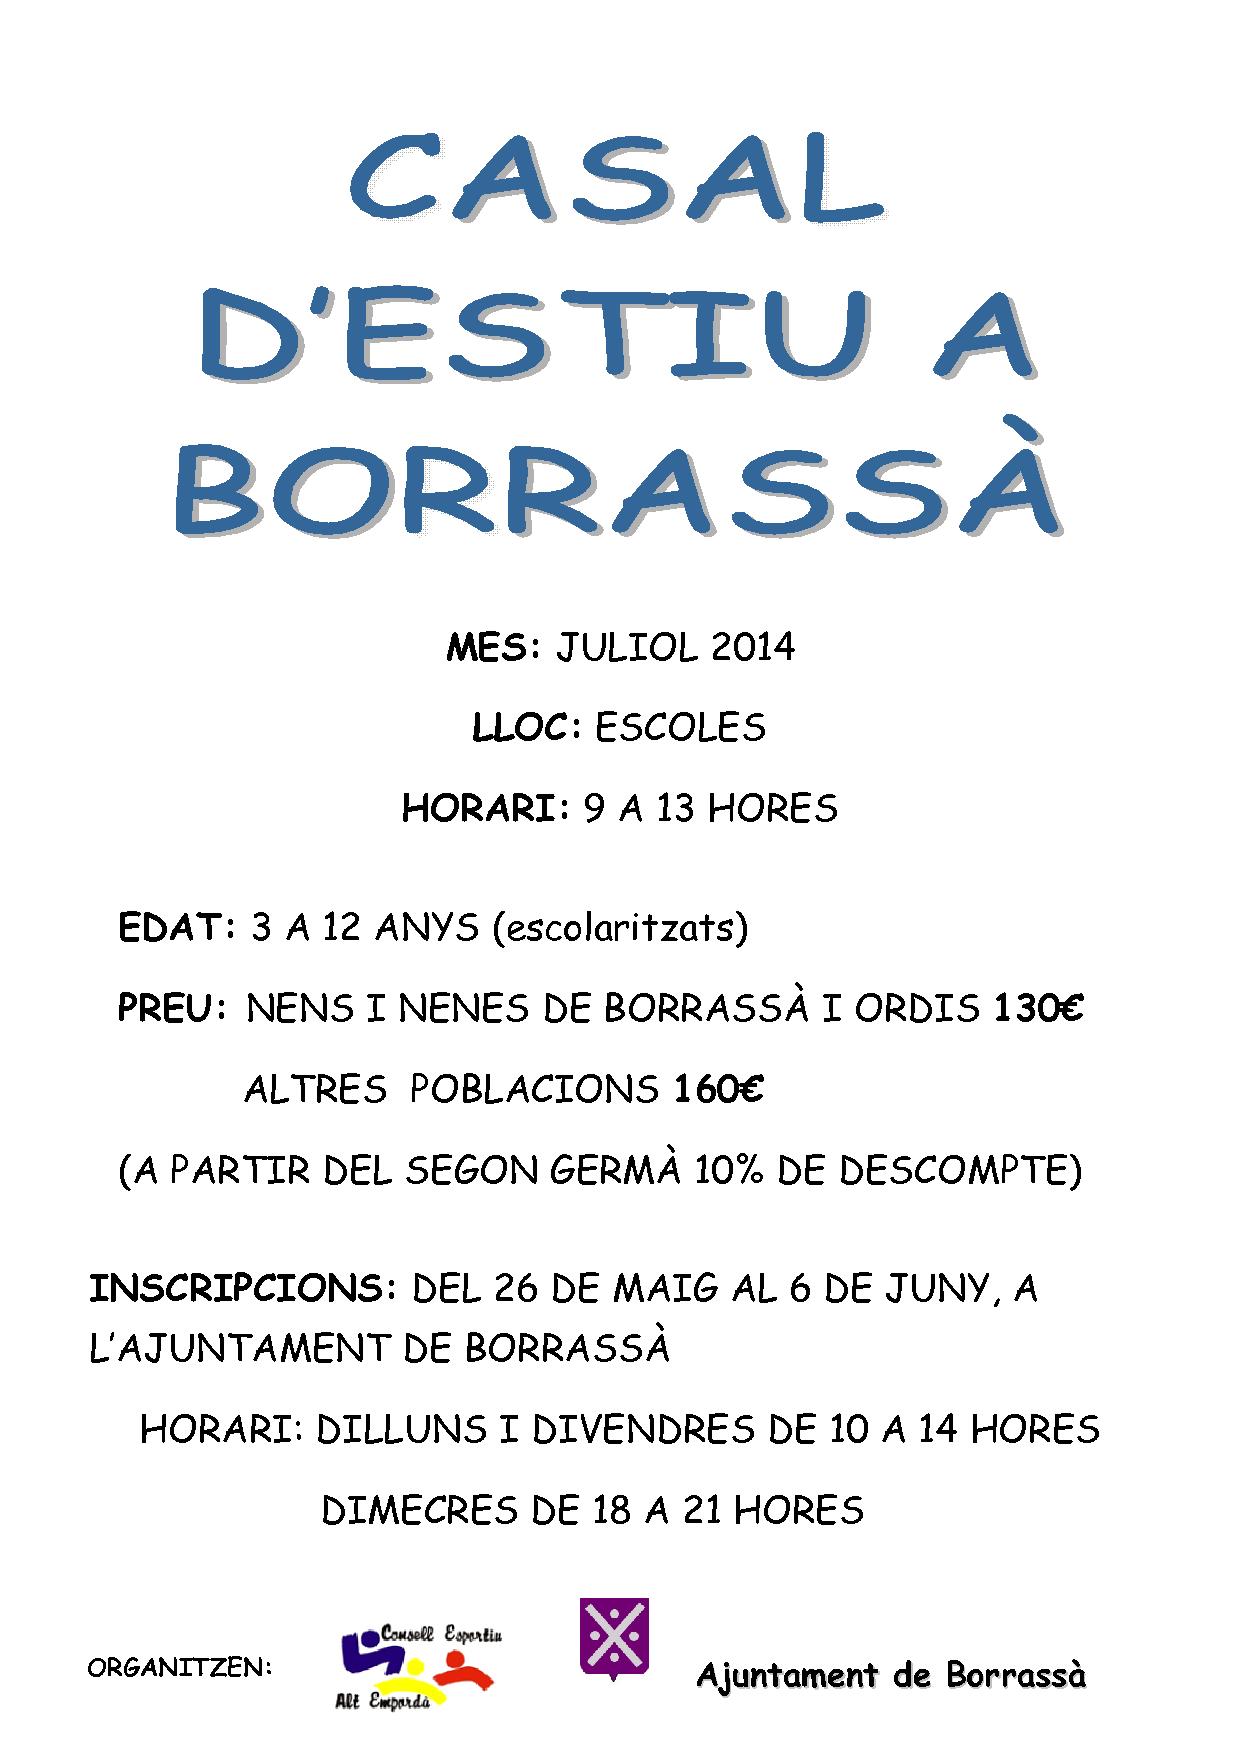 El dilluns 26 de maig s'obrirà el període d'inscripcions per poder participar al Casal d'estiu de Borrassà, que es farà el mes de juliol.